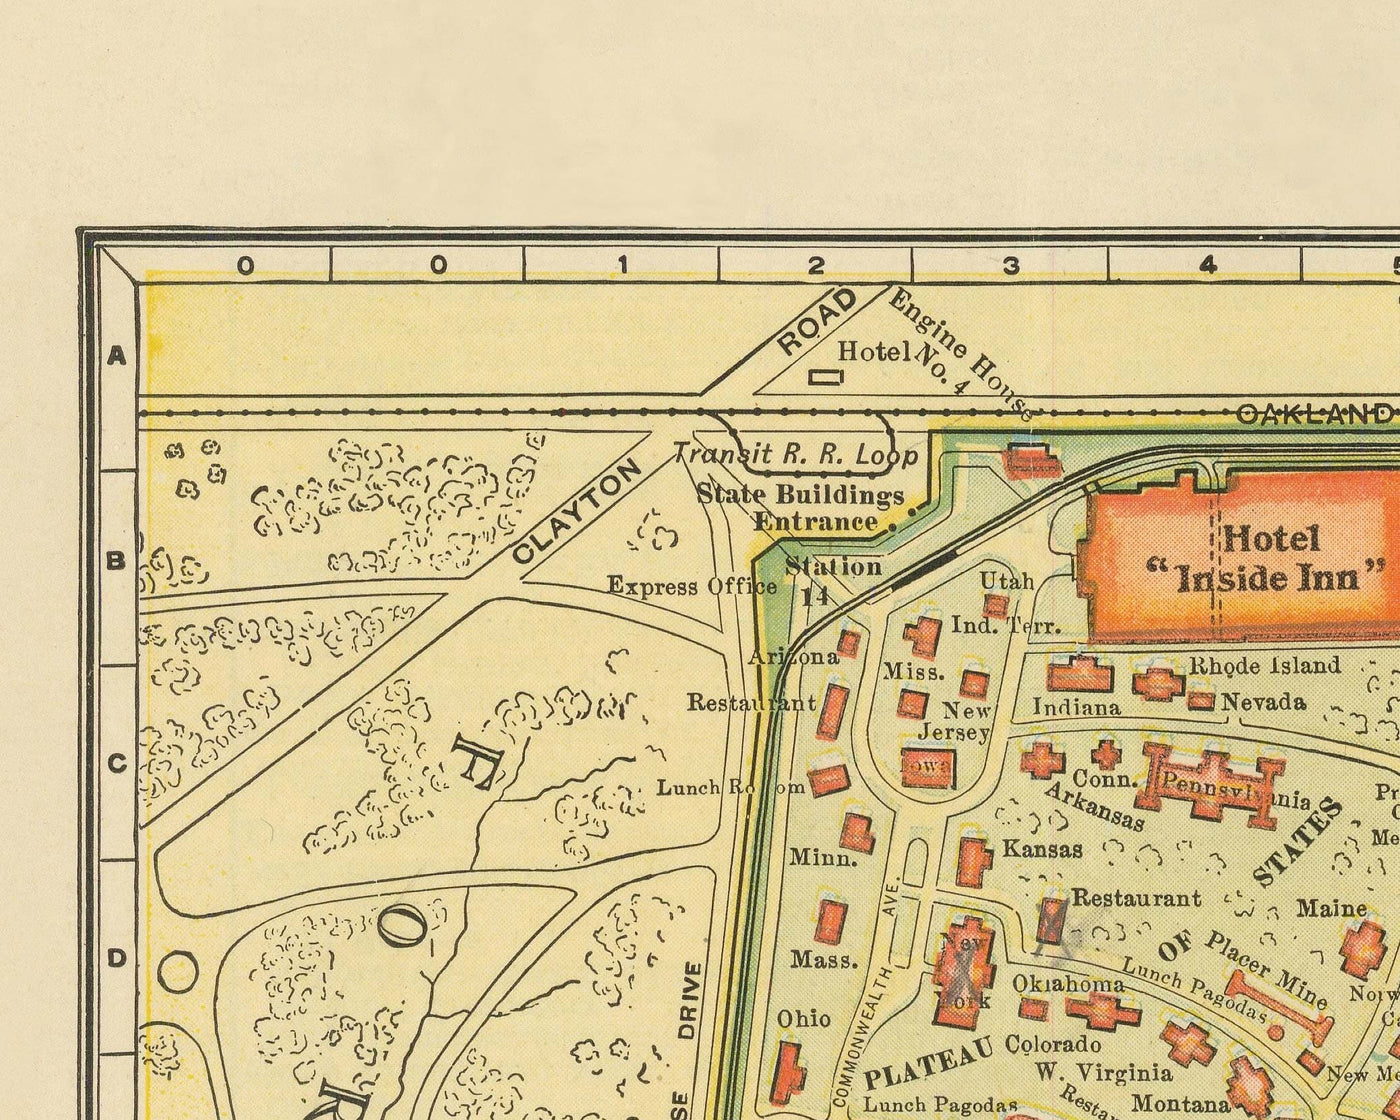 Viejo mapa de San Luis, Missouri, 1904 - Feria Mundial, Luisiana Compra Exposición - Historia de los EE. UU.